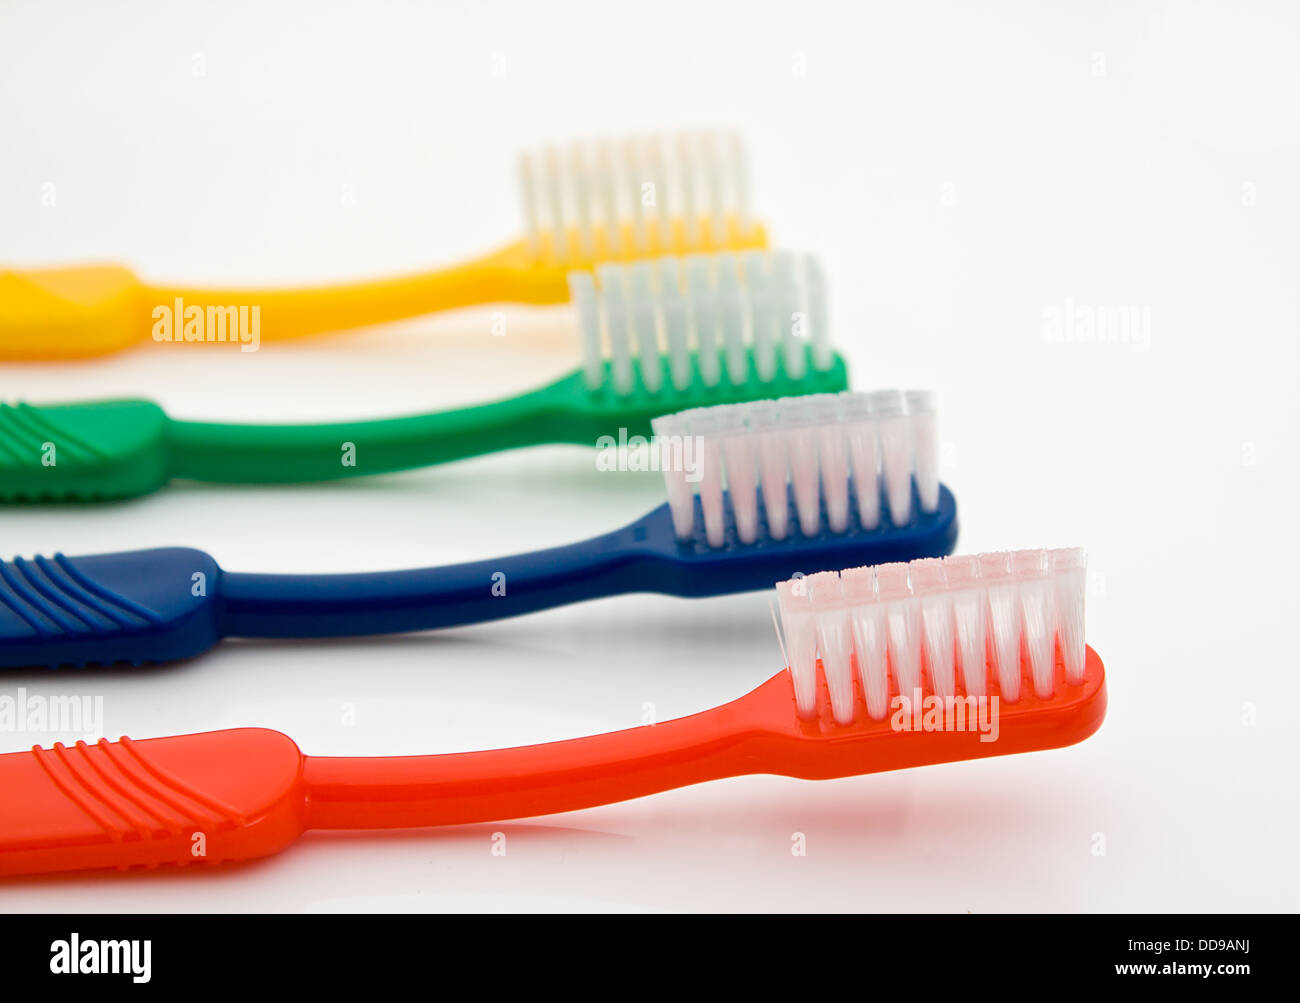 Détail d'une rangée de brosses à dents de couleur différente avec l'avant dans un bon point sélective pour les dentistes Banque D'Images